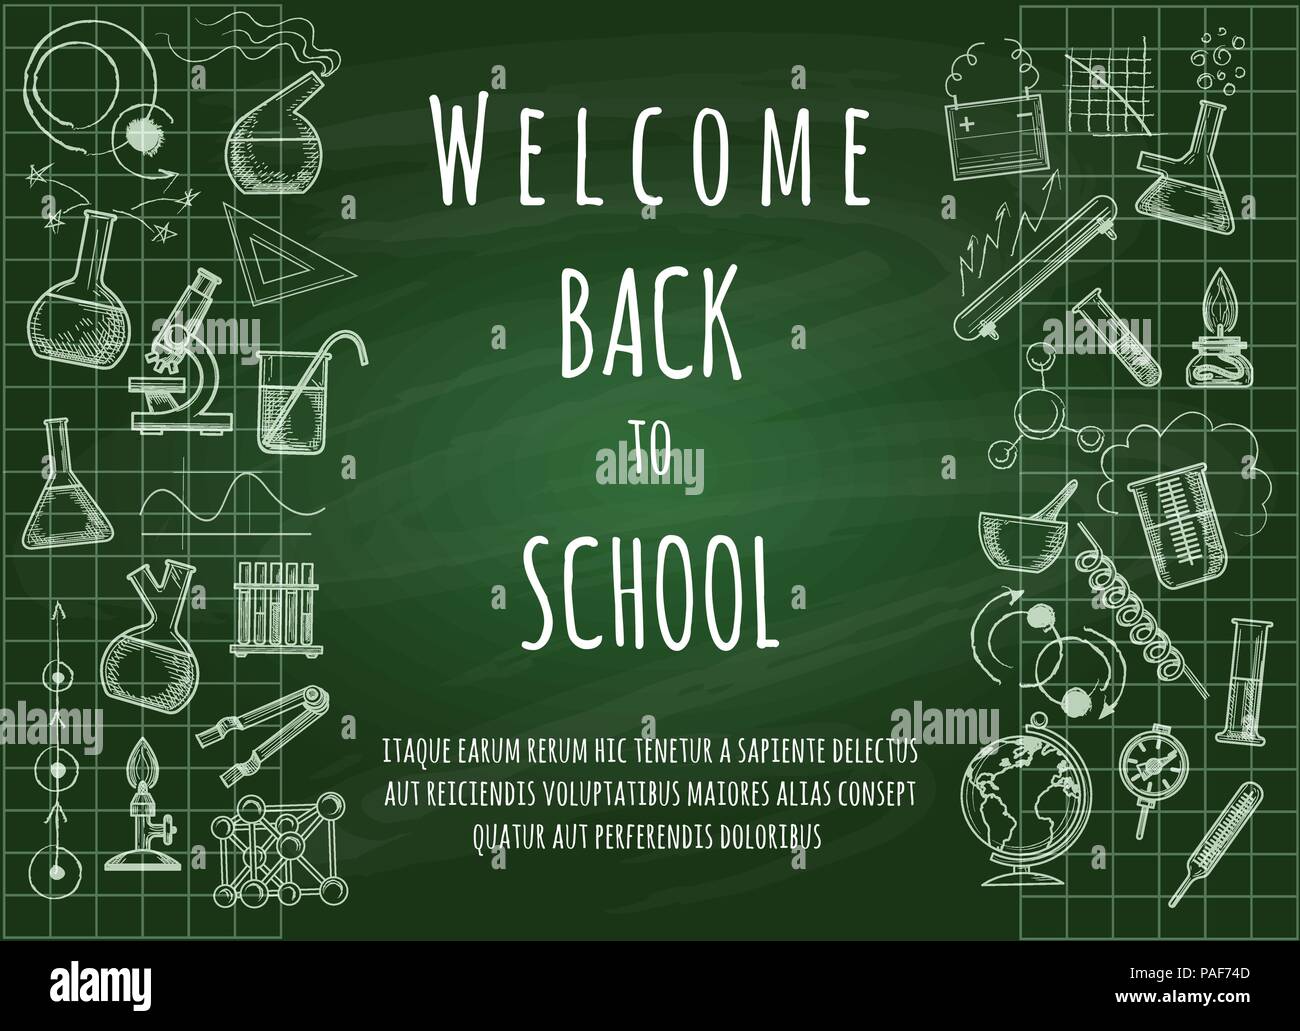 Zurück in der Schule willkommen. Grüne Kreidetafel doodle Ausbildung für Schüler und Lehrer, Vector Illustration Stock Vektor